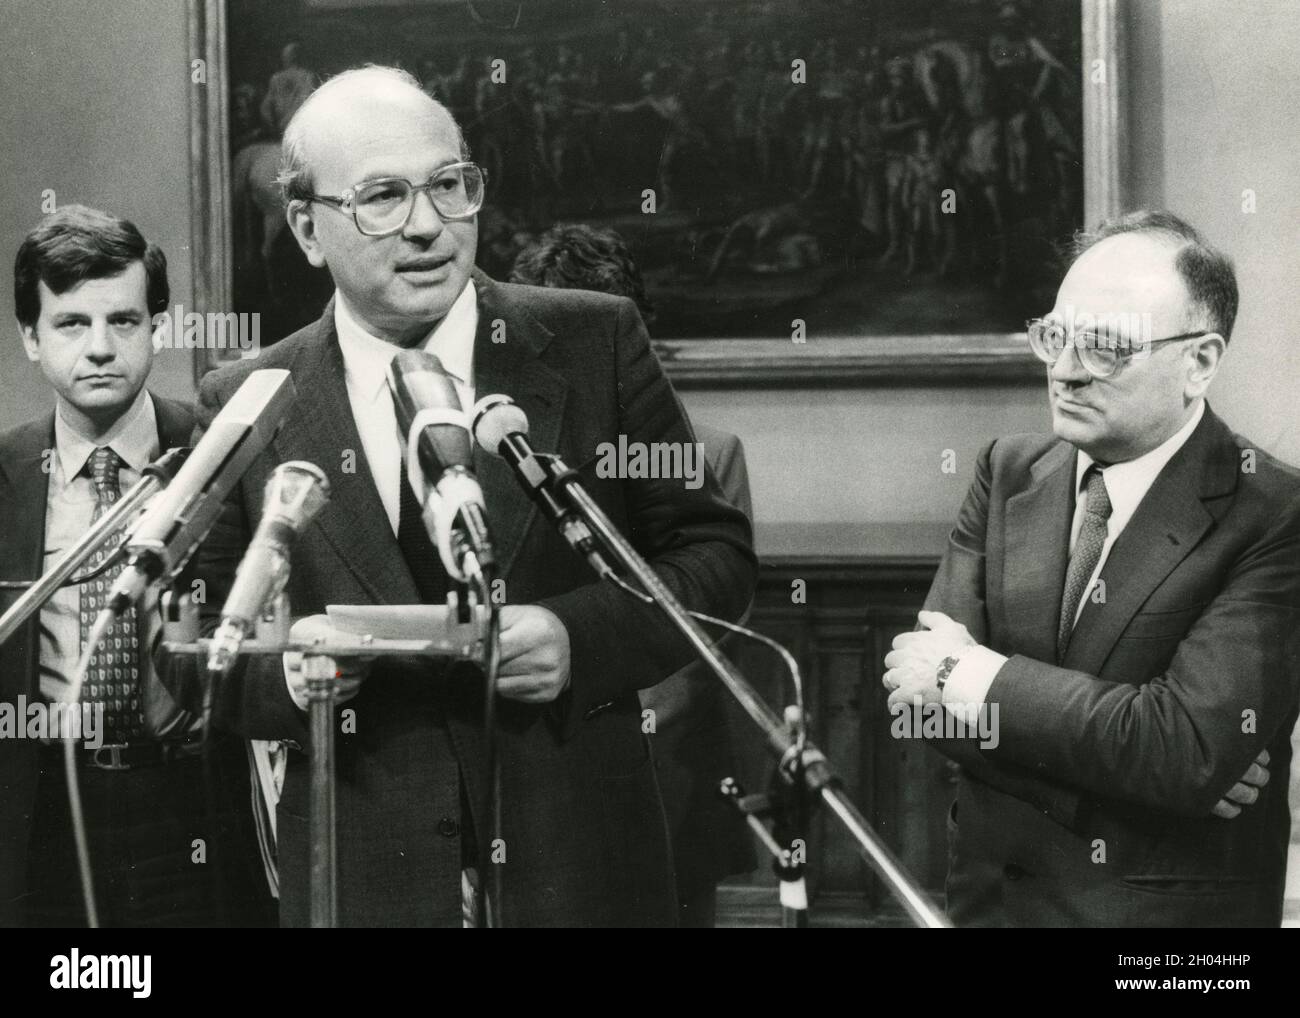 Político italiano y P. Bettino Craxi, 1980s Foto de stock